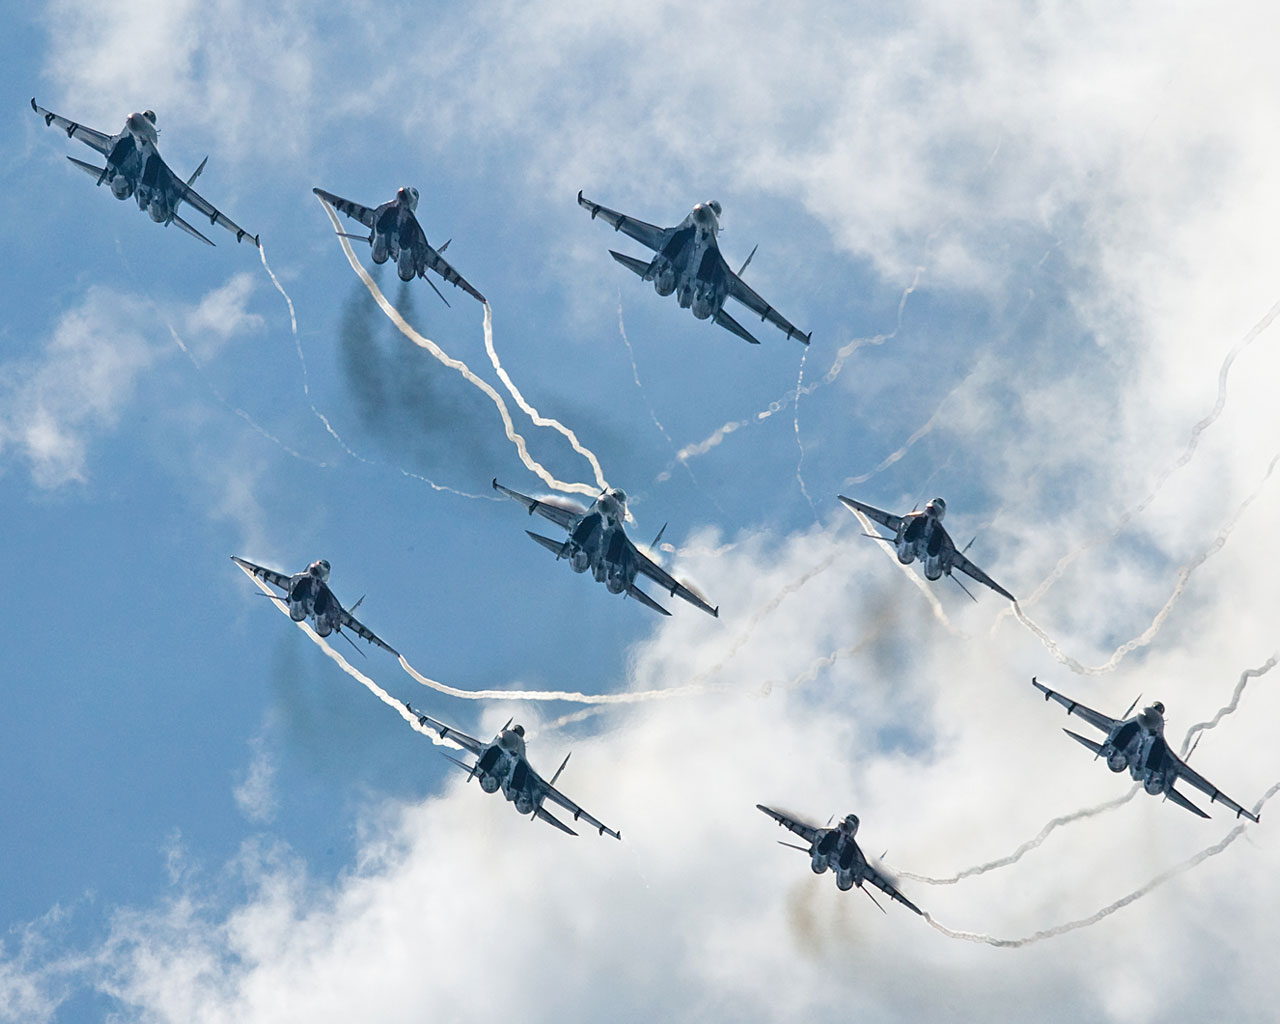 День ВВС: топ-10 отечественных военных самолетов